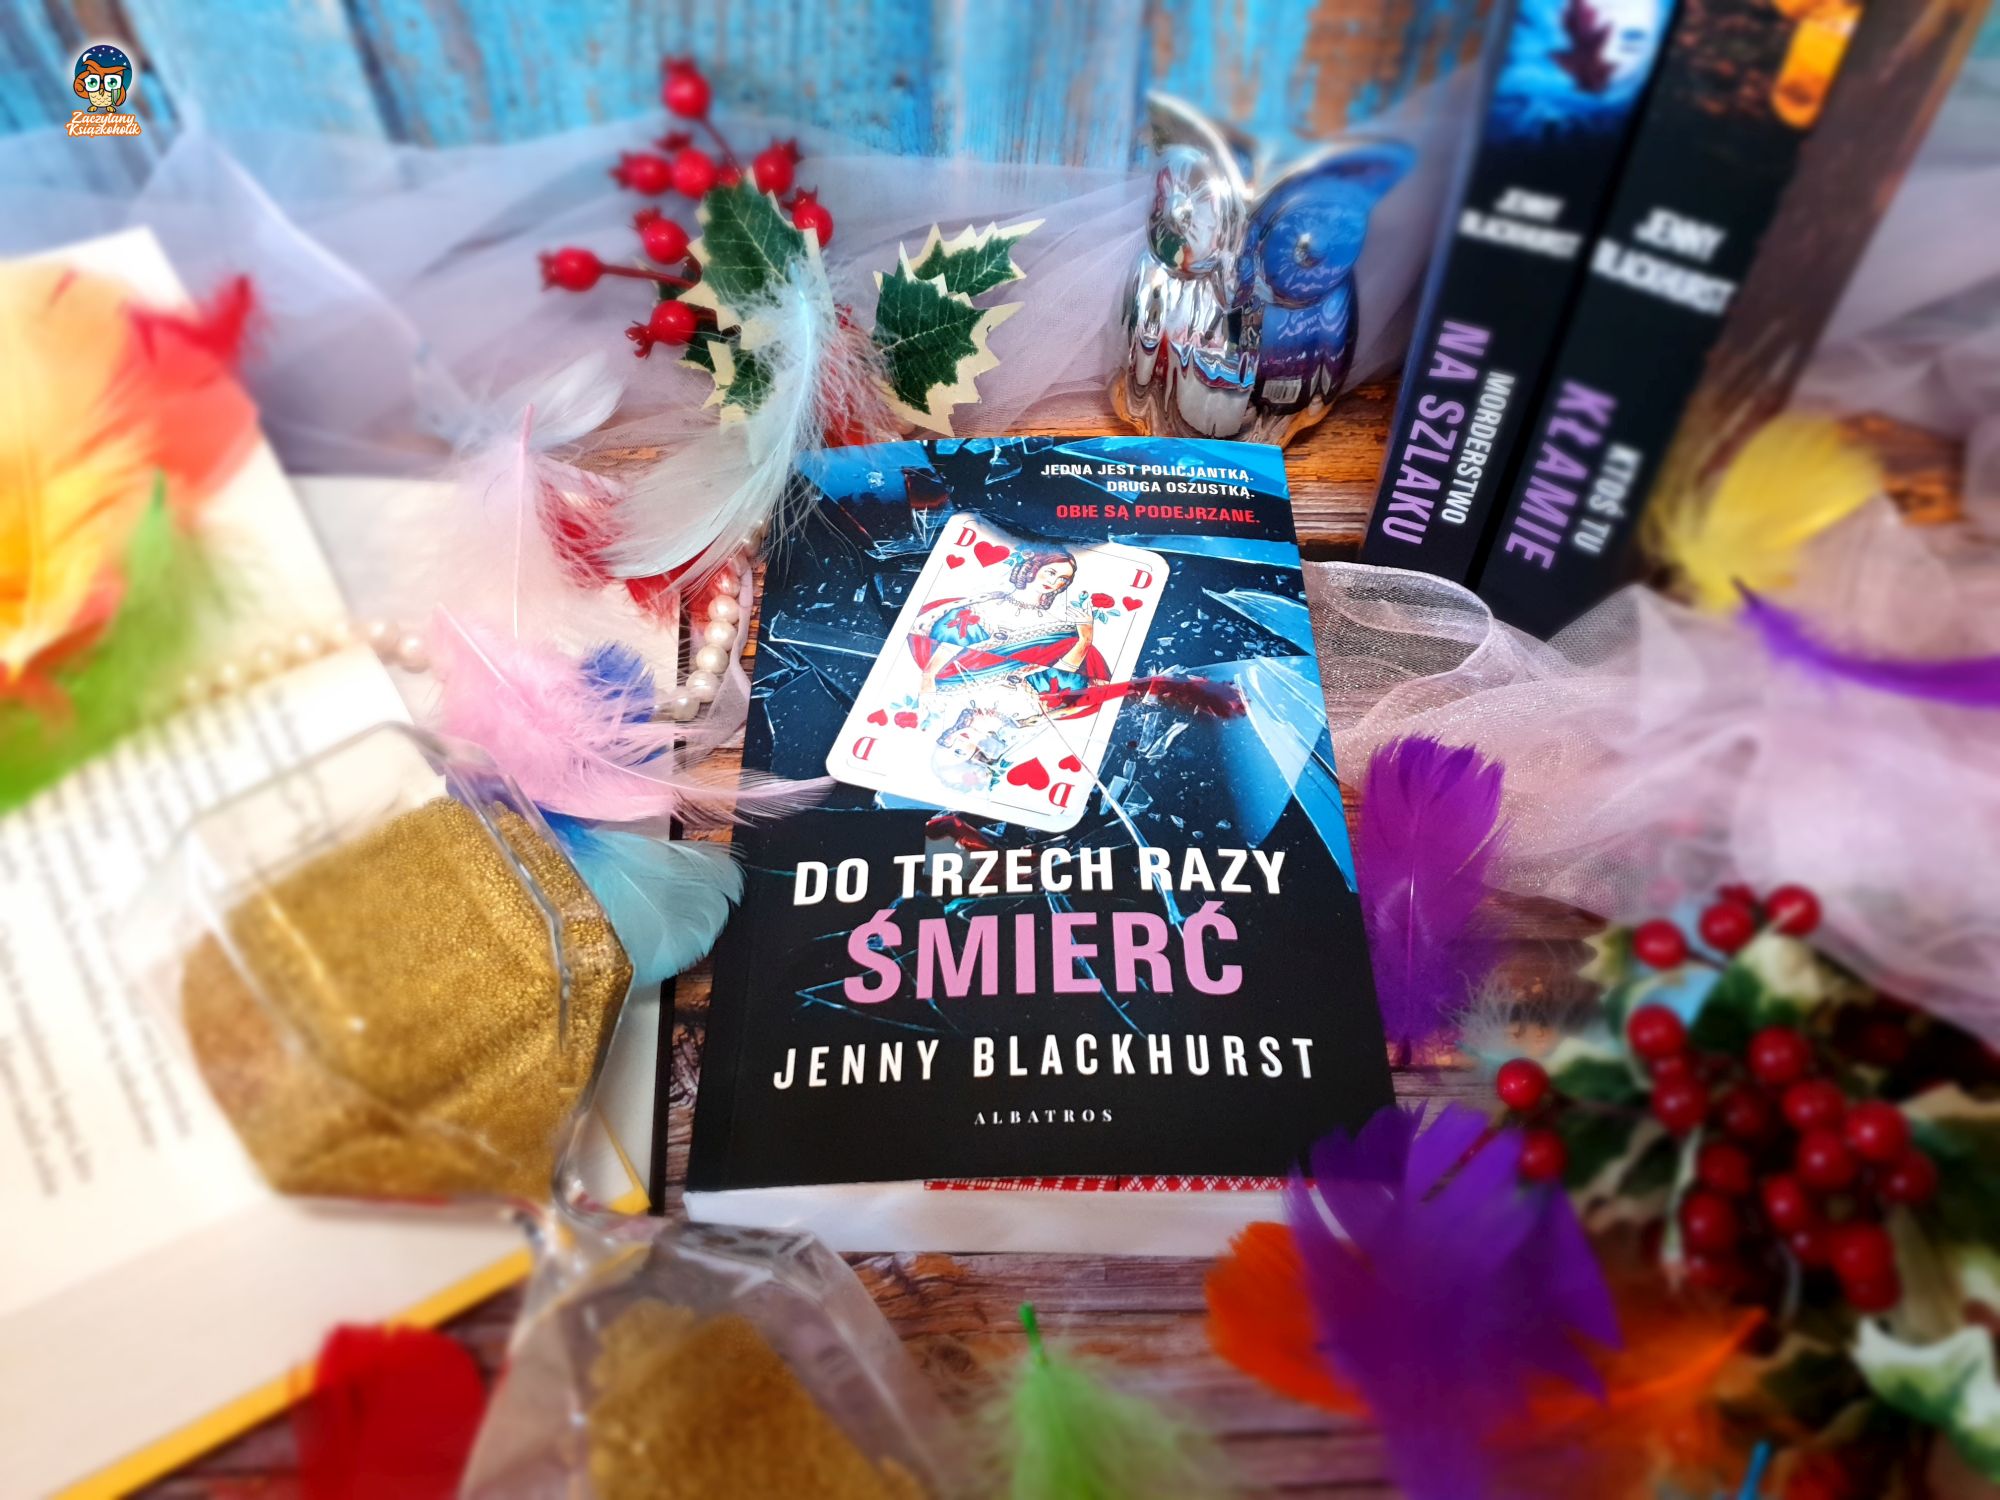 Blog książkowy - Jenny Blackhurst ze swoją najnowszą powieścią pt. Do trzech razy śmierć - zaczytanyksiazkoholik.pl